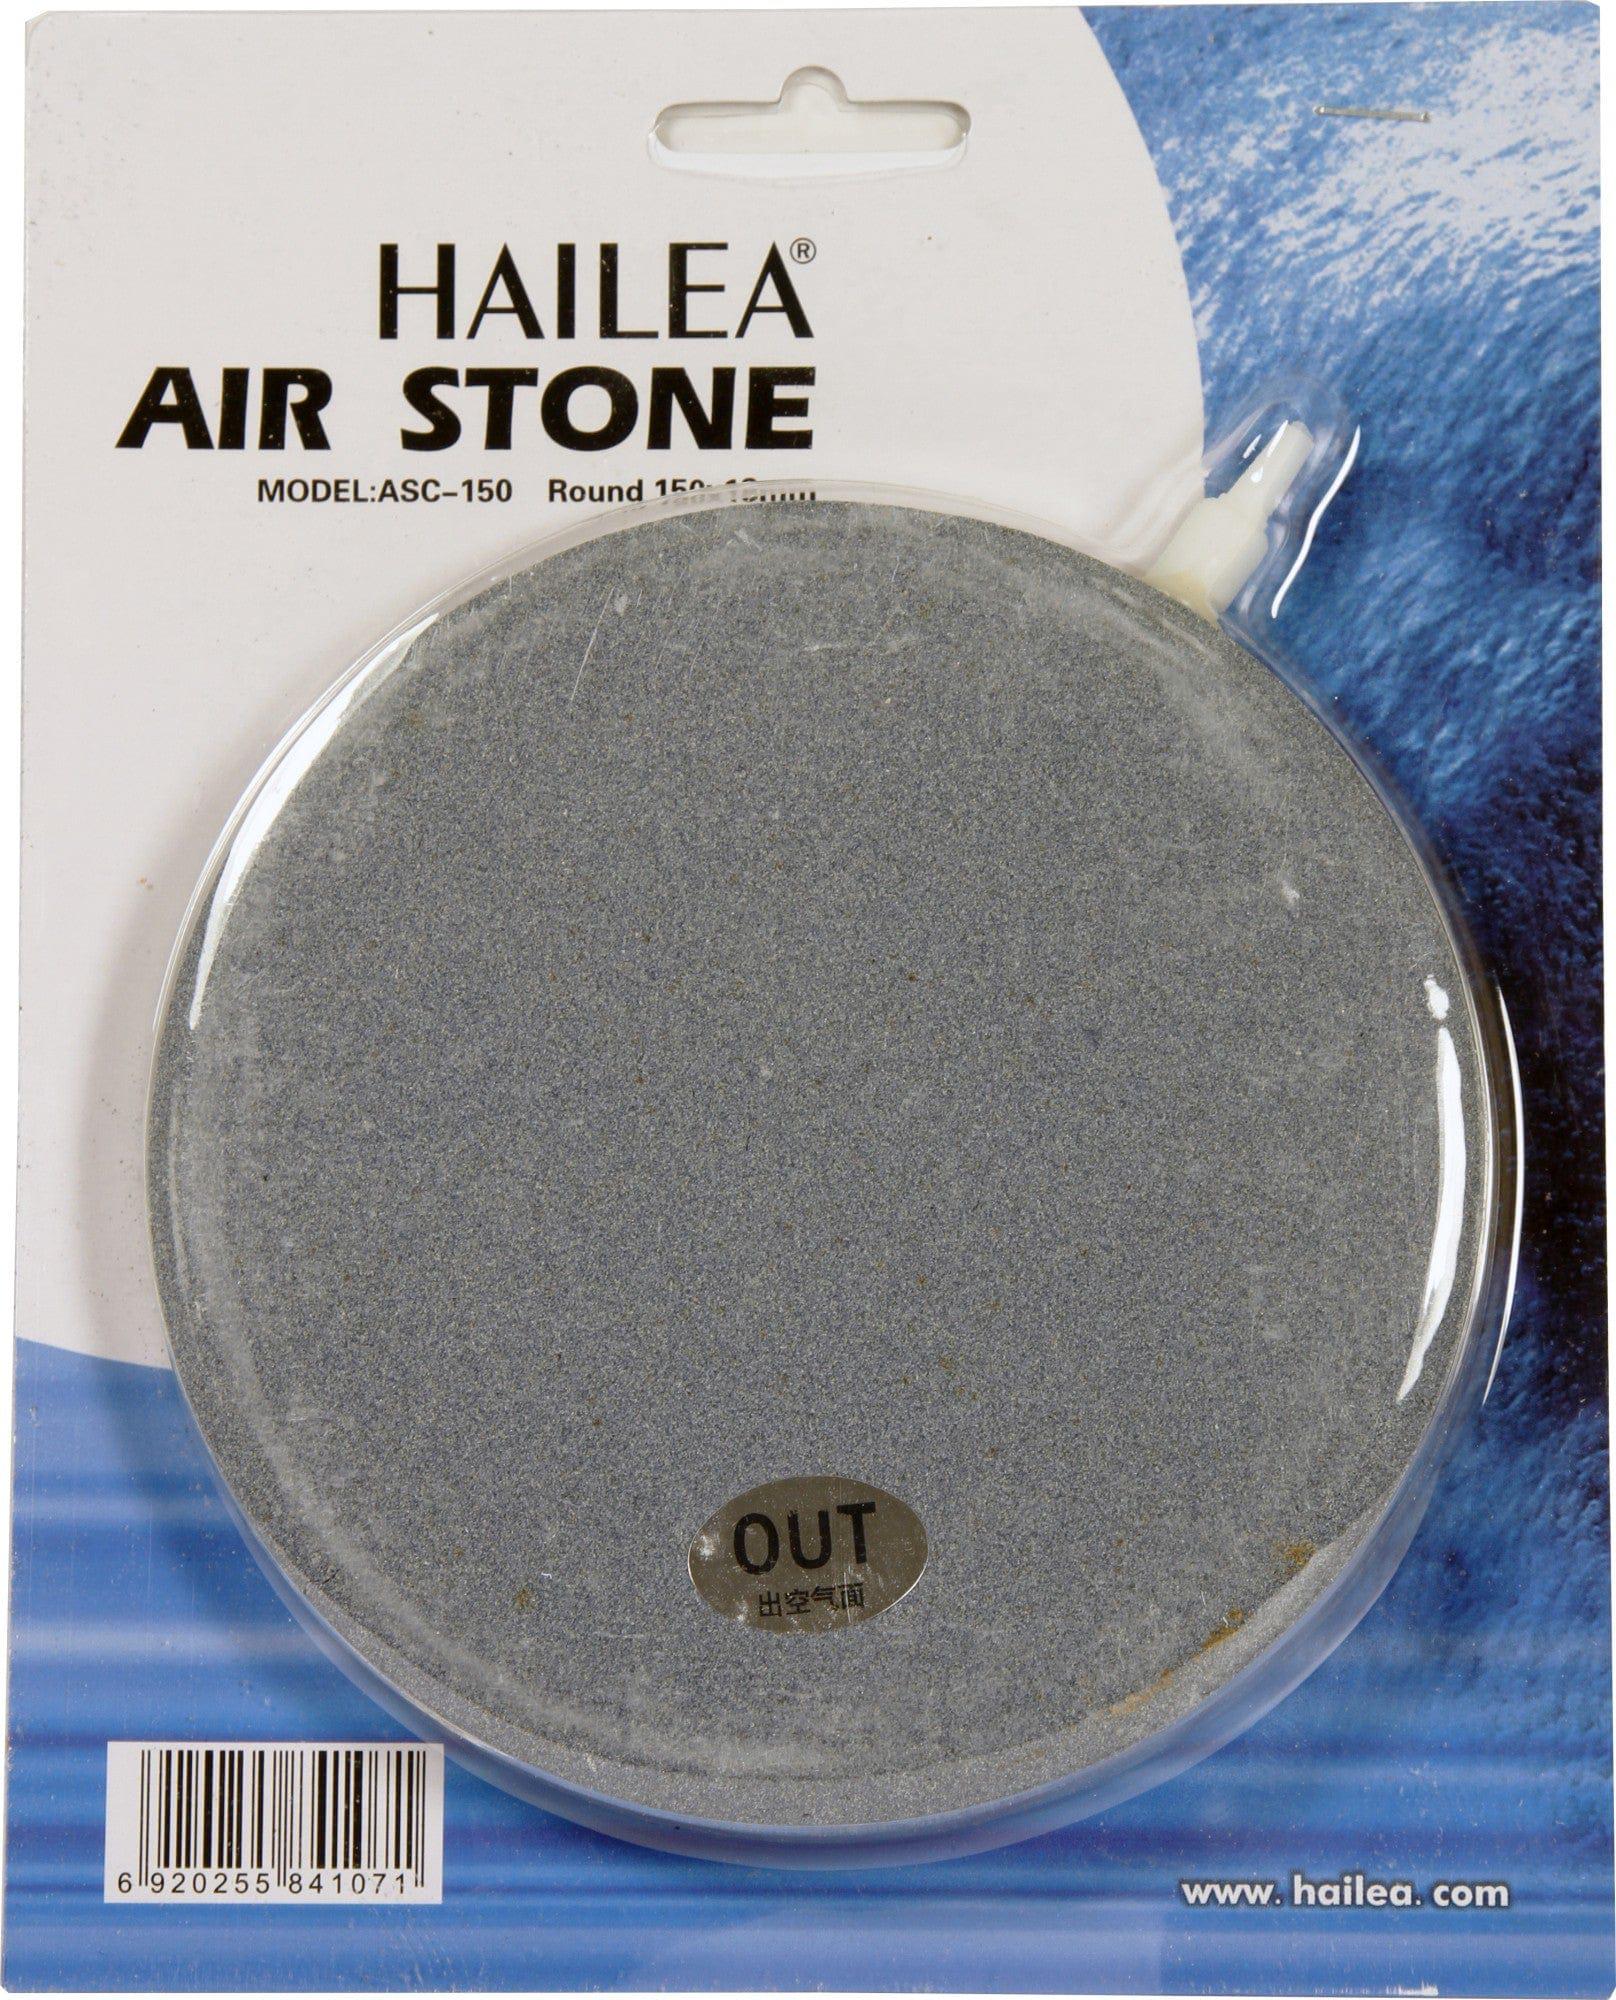 Air Pump & Air Stones Hailea Round Air Stone 6" x 18mm Hailea Round Air Stone